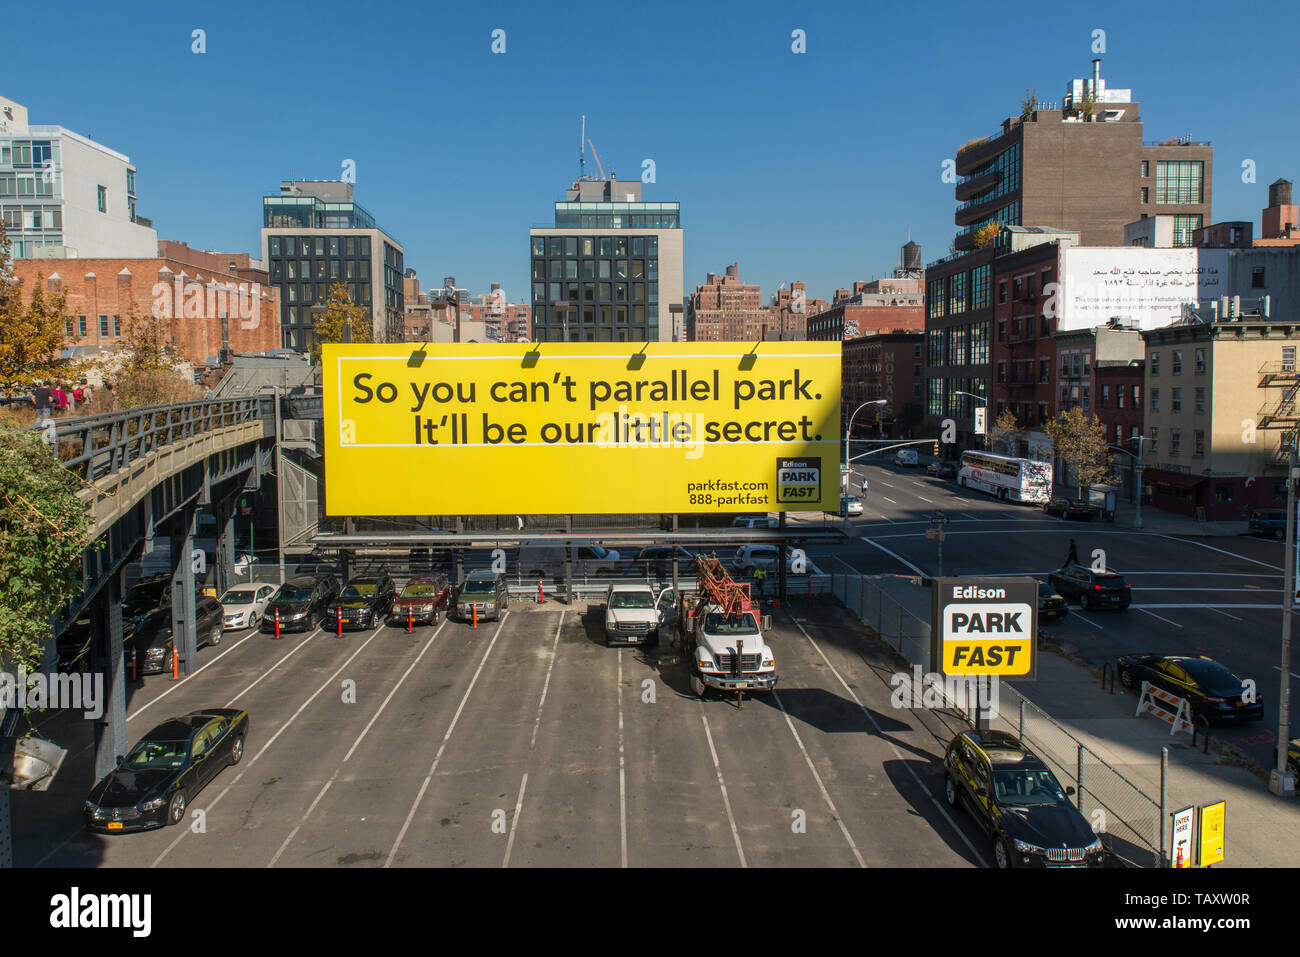 Werbung für einen Parkplatz Entlang der mit der Aufschrift High Line : 'Du kannst nicht également parken parallèle, es wird unser kleines Geheimnis sein.' / Banque D'Images